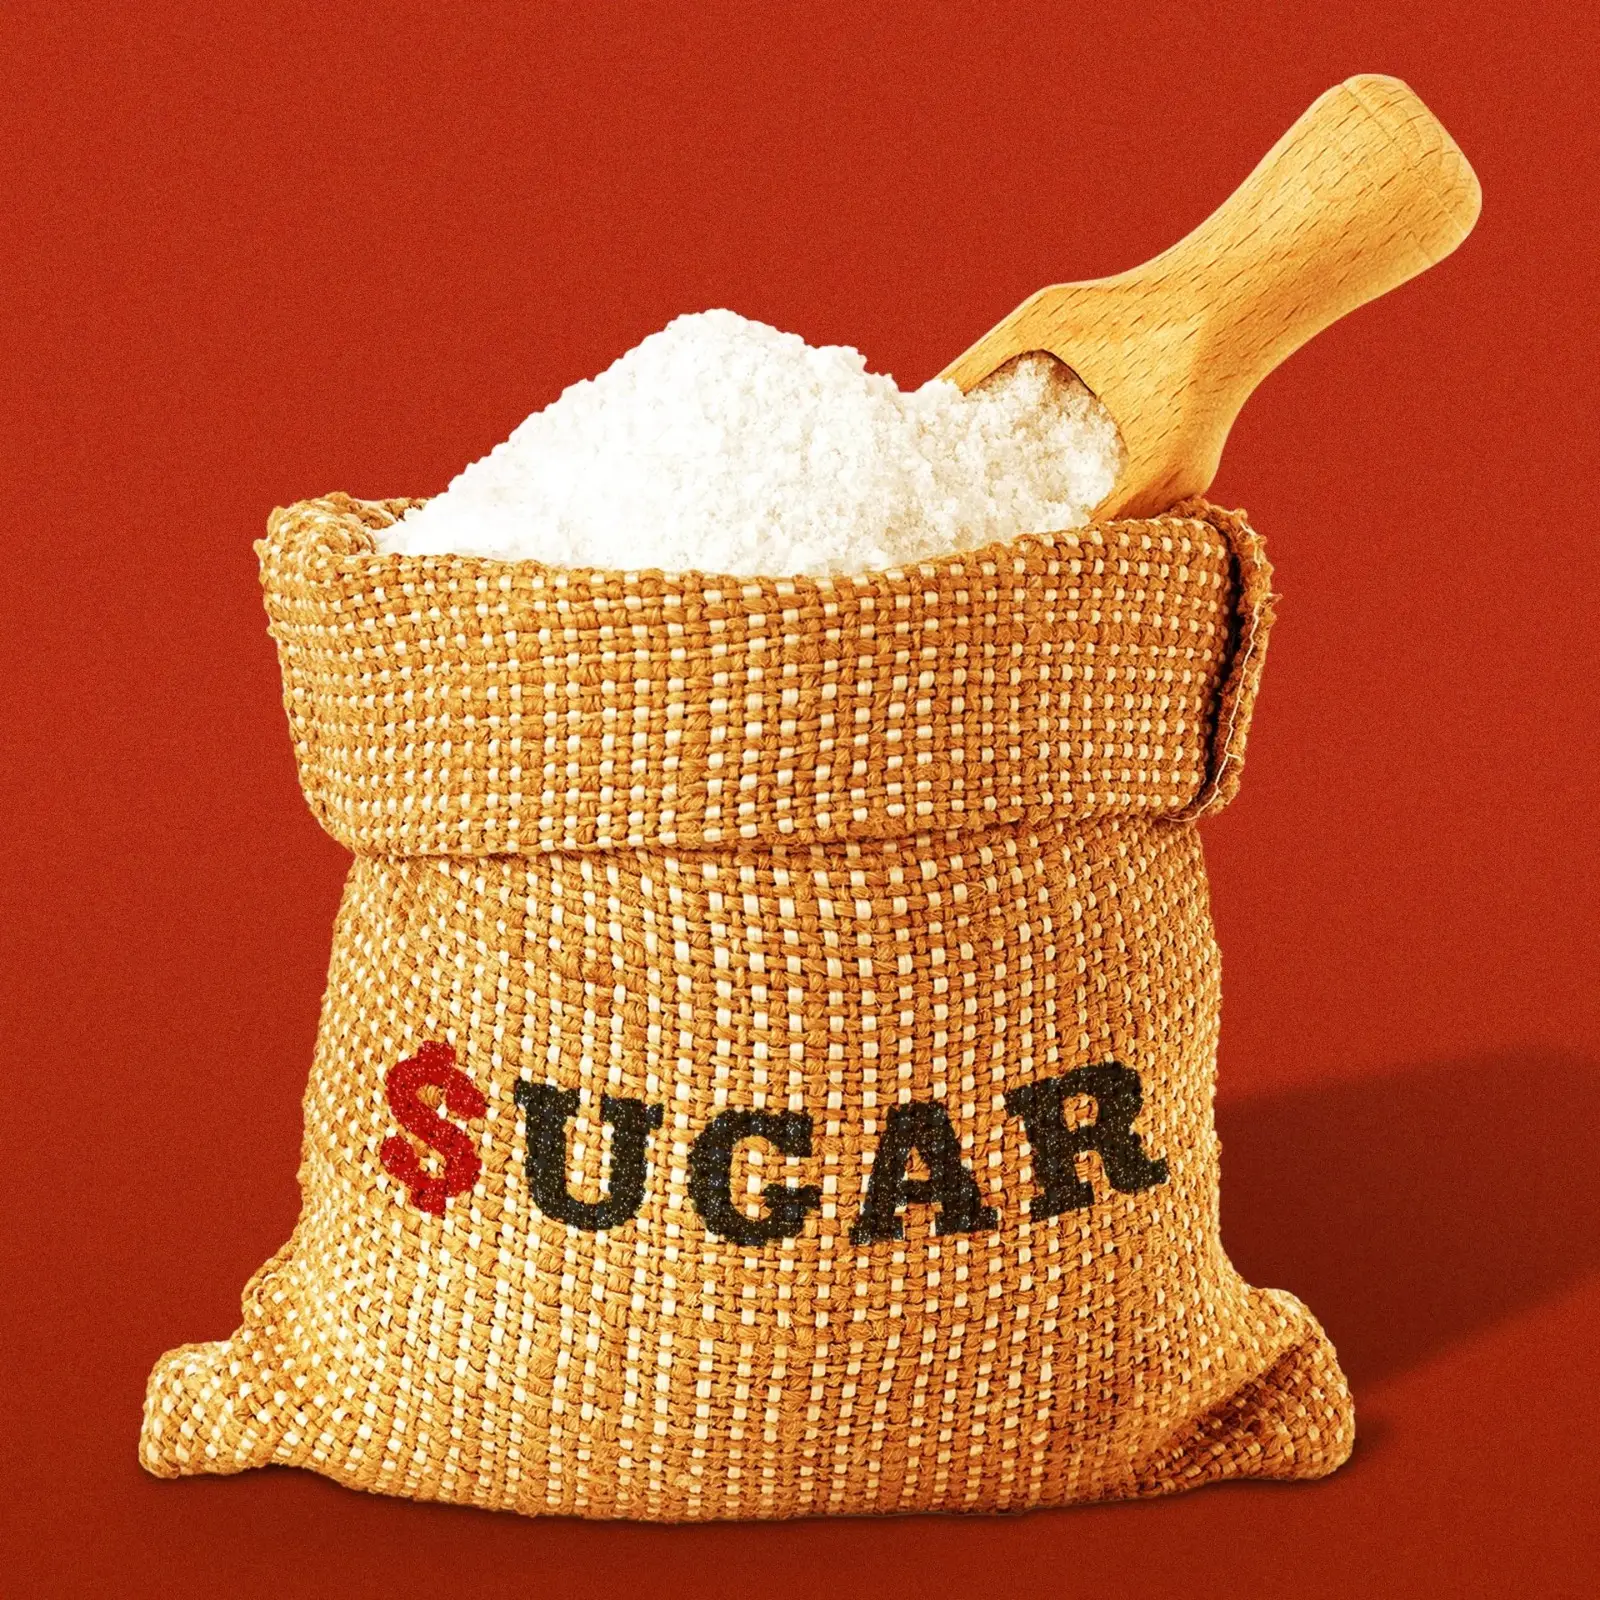 Beste Kwaliteit Witte Geraffineerde Suiker Icumsa 45, Bruine Suiker, Ruwe Suikerpoeder En Blokjes Te Koop